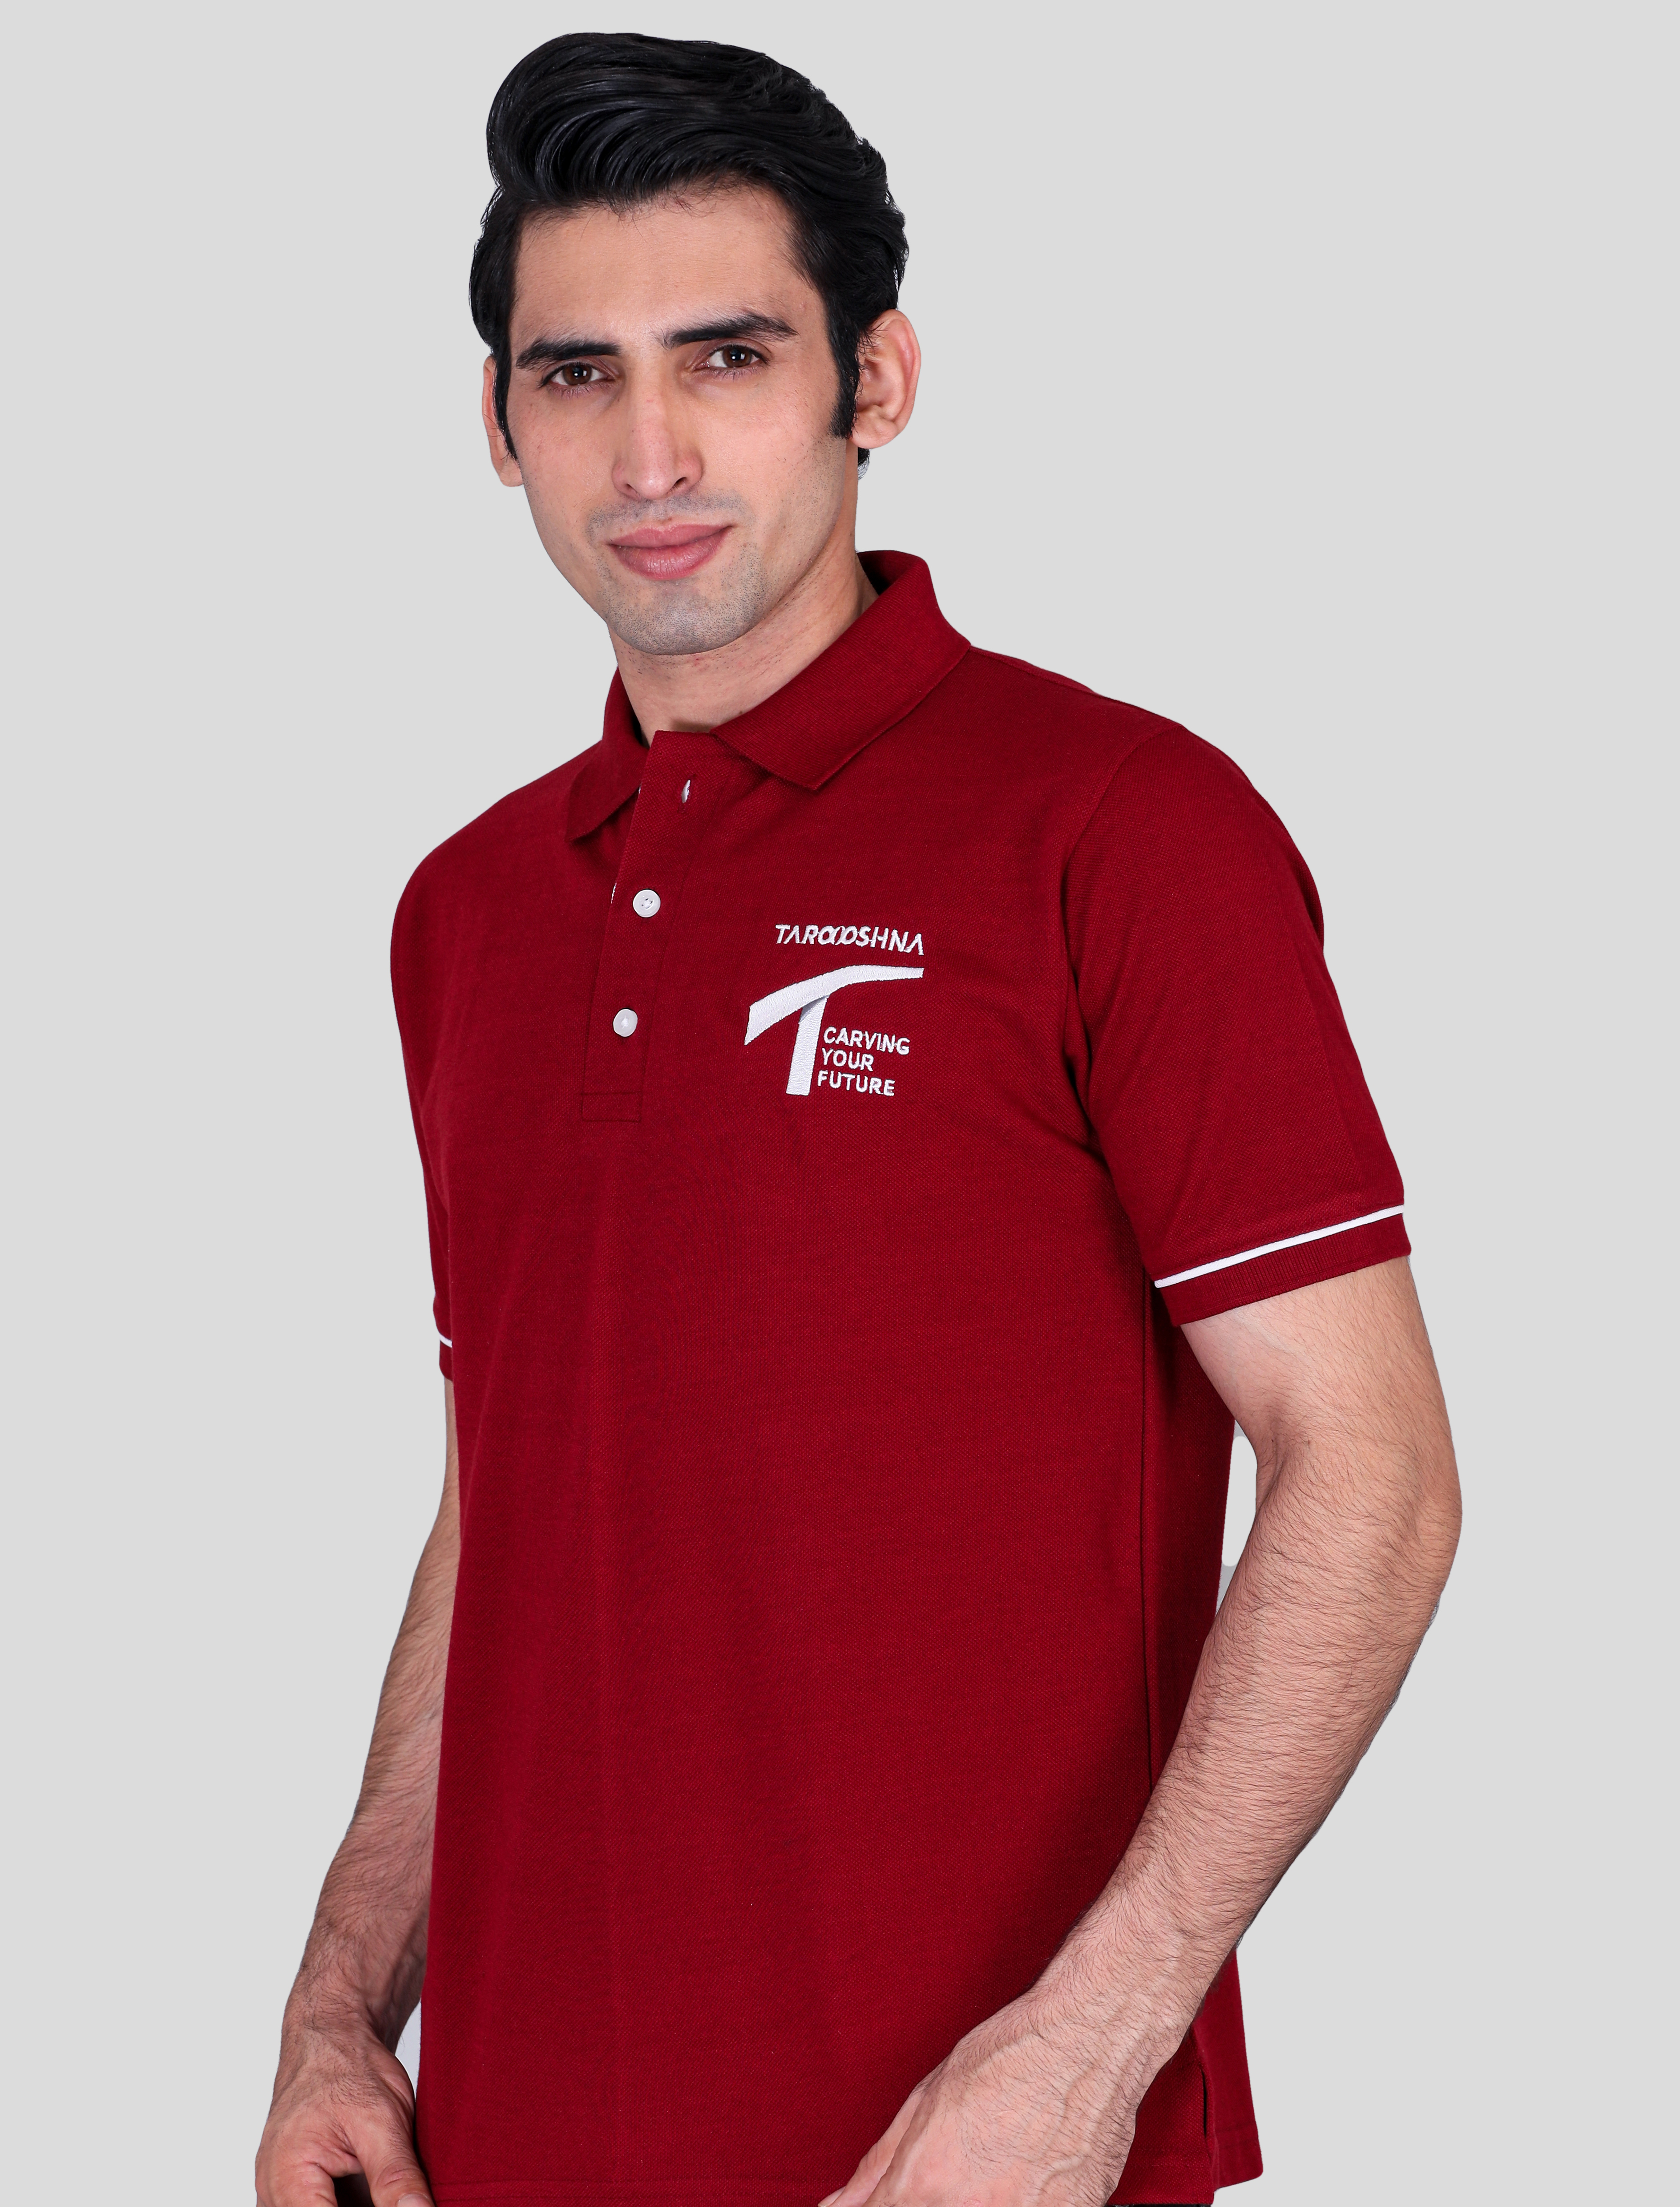 Taraashna maroon custom polo t-shirts with company logo